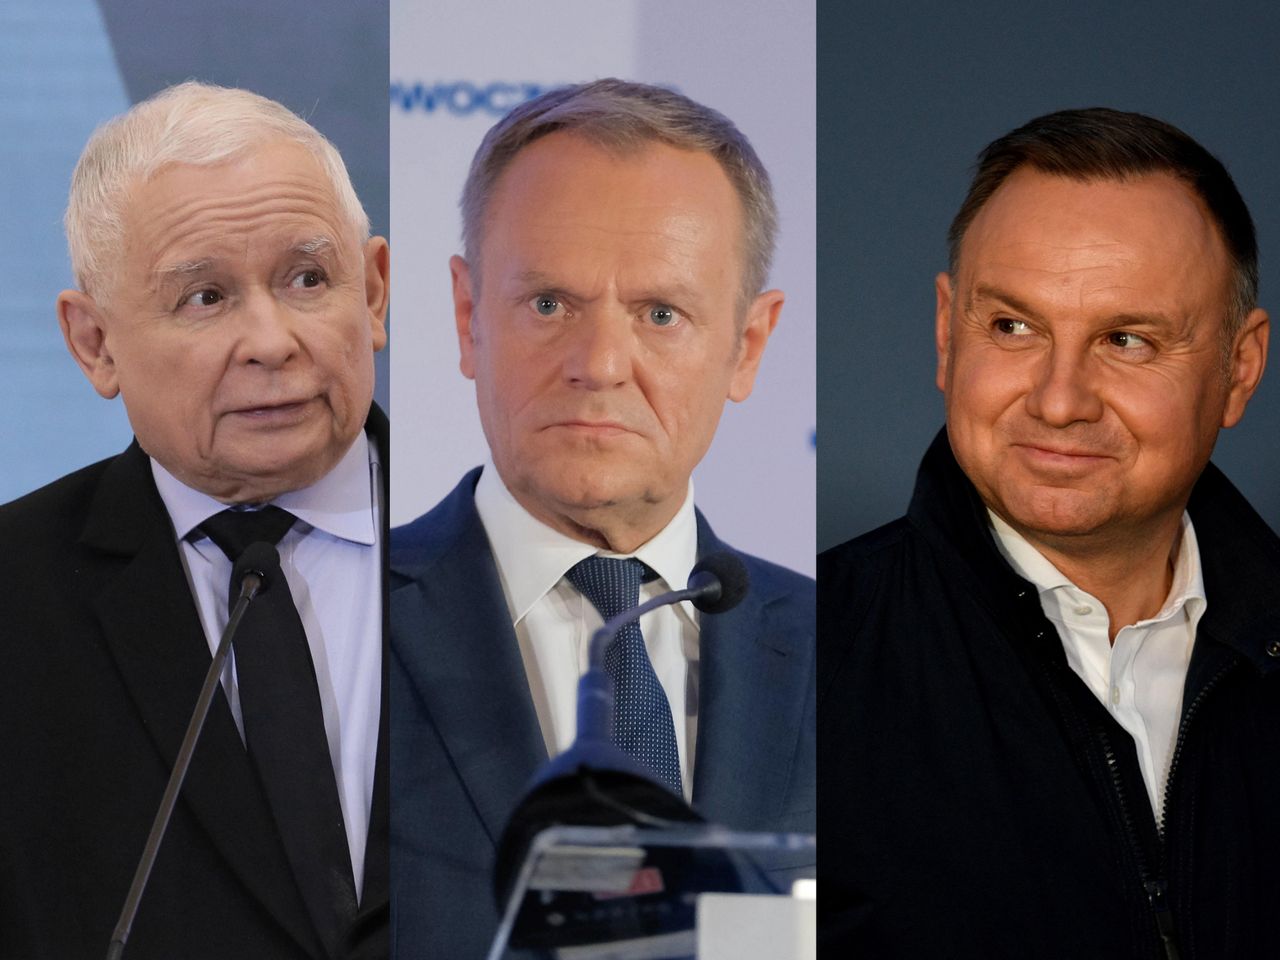 Nowy sondaż dla WP. Polacy ocenili m.in. Dudę i Kaczyńskiego. Różnica jest ogromna